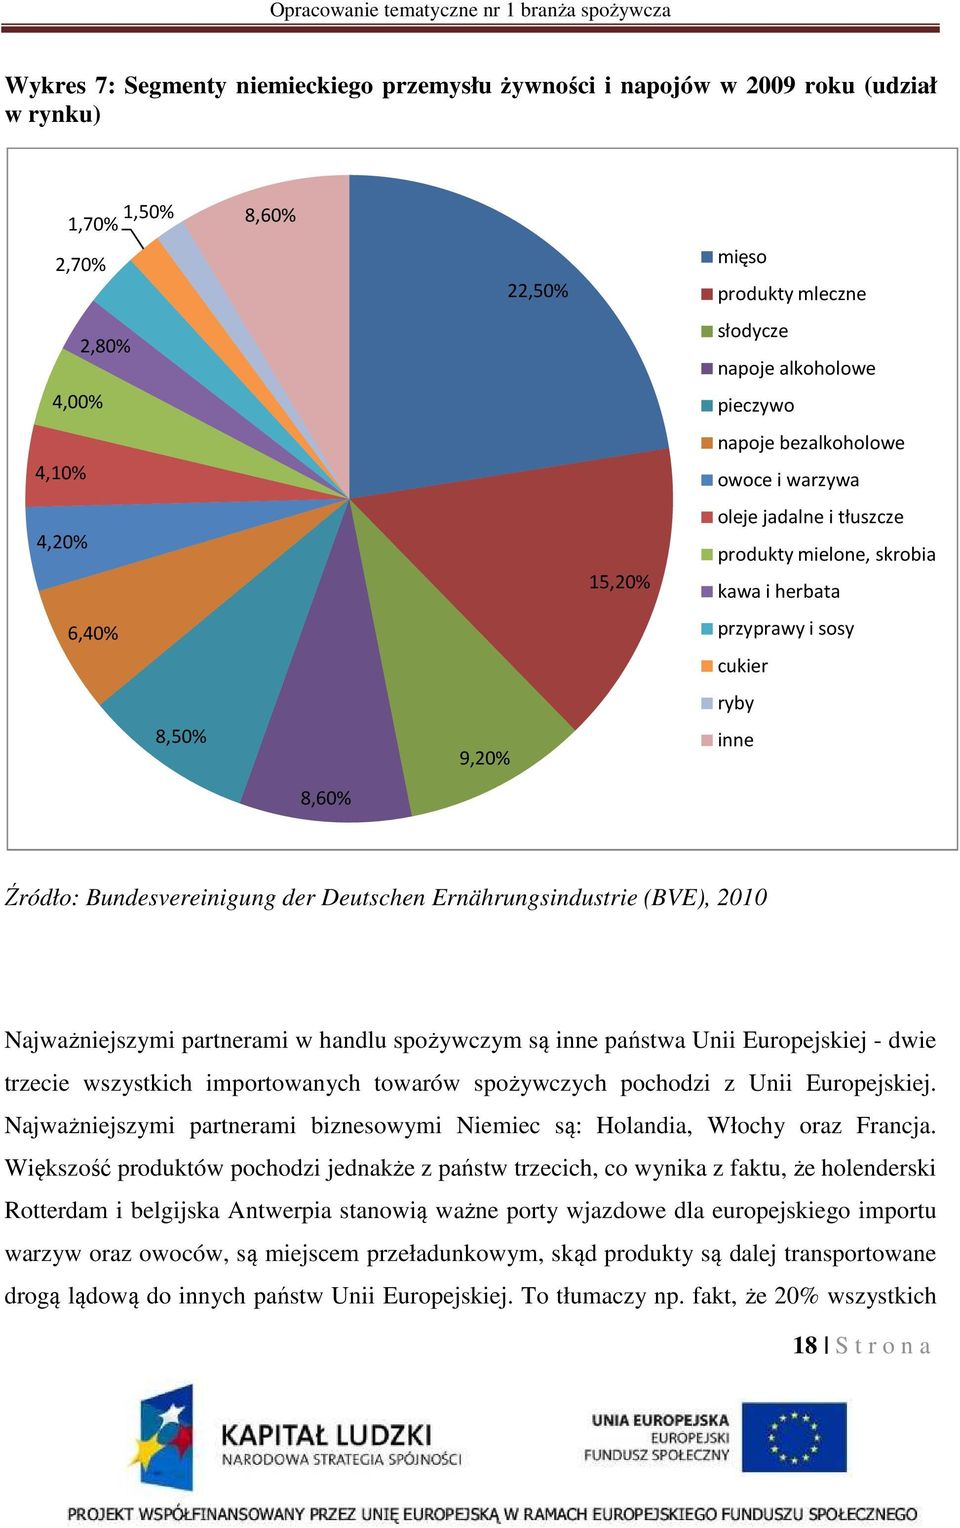 Bundesvereinigung der Deutschen Ernährungsindustrie (BVE), 2010 Najważniejszymi partnerami w handlu spożywczym są inne państwa Unii Europejskiej - dwie trzecie wszystkich importowanych towarów